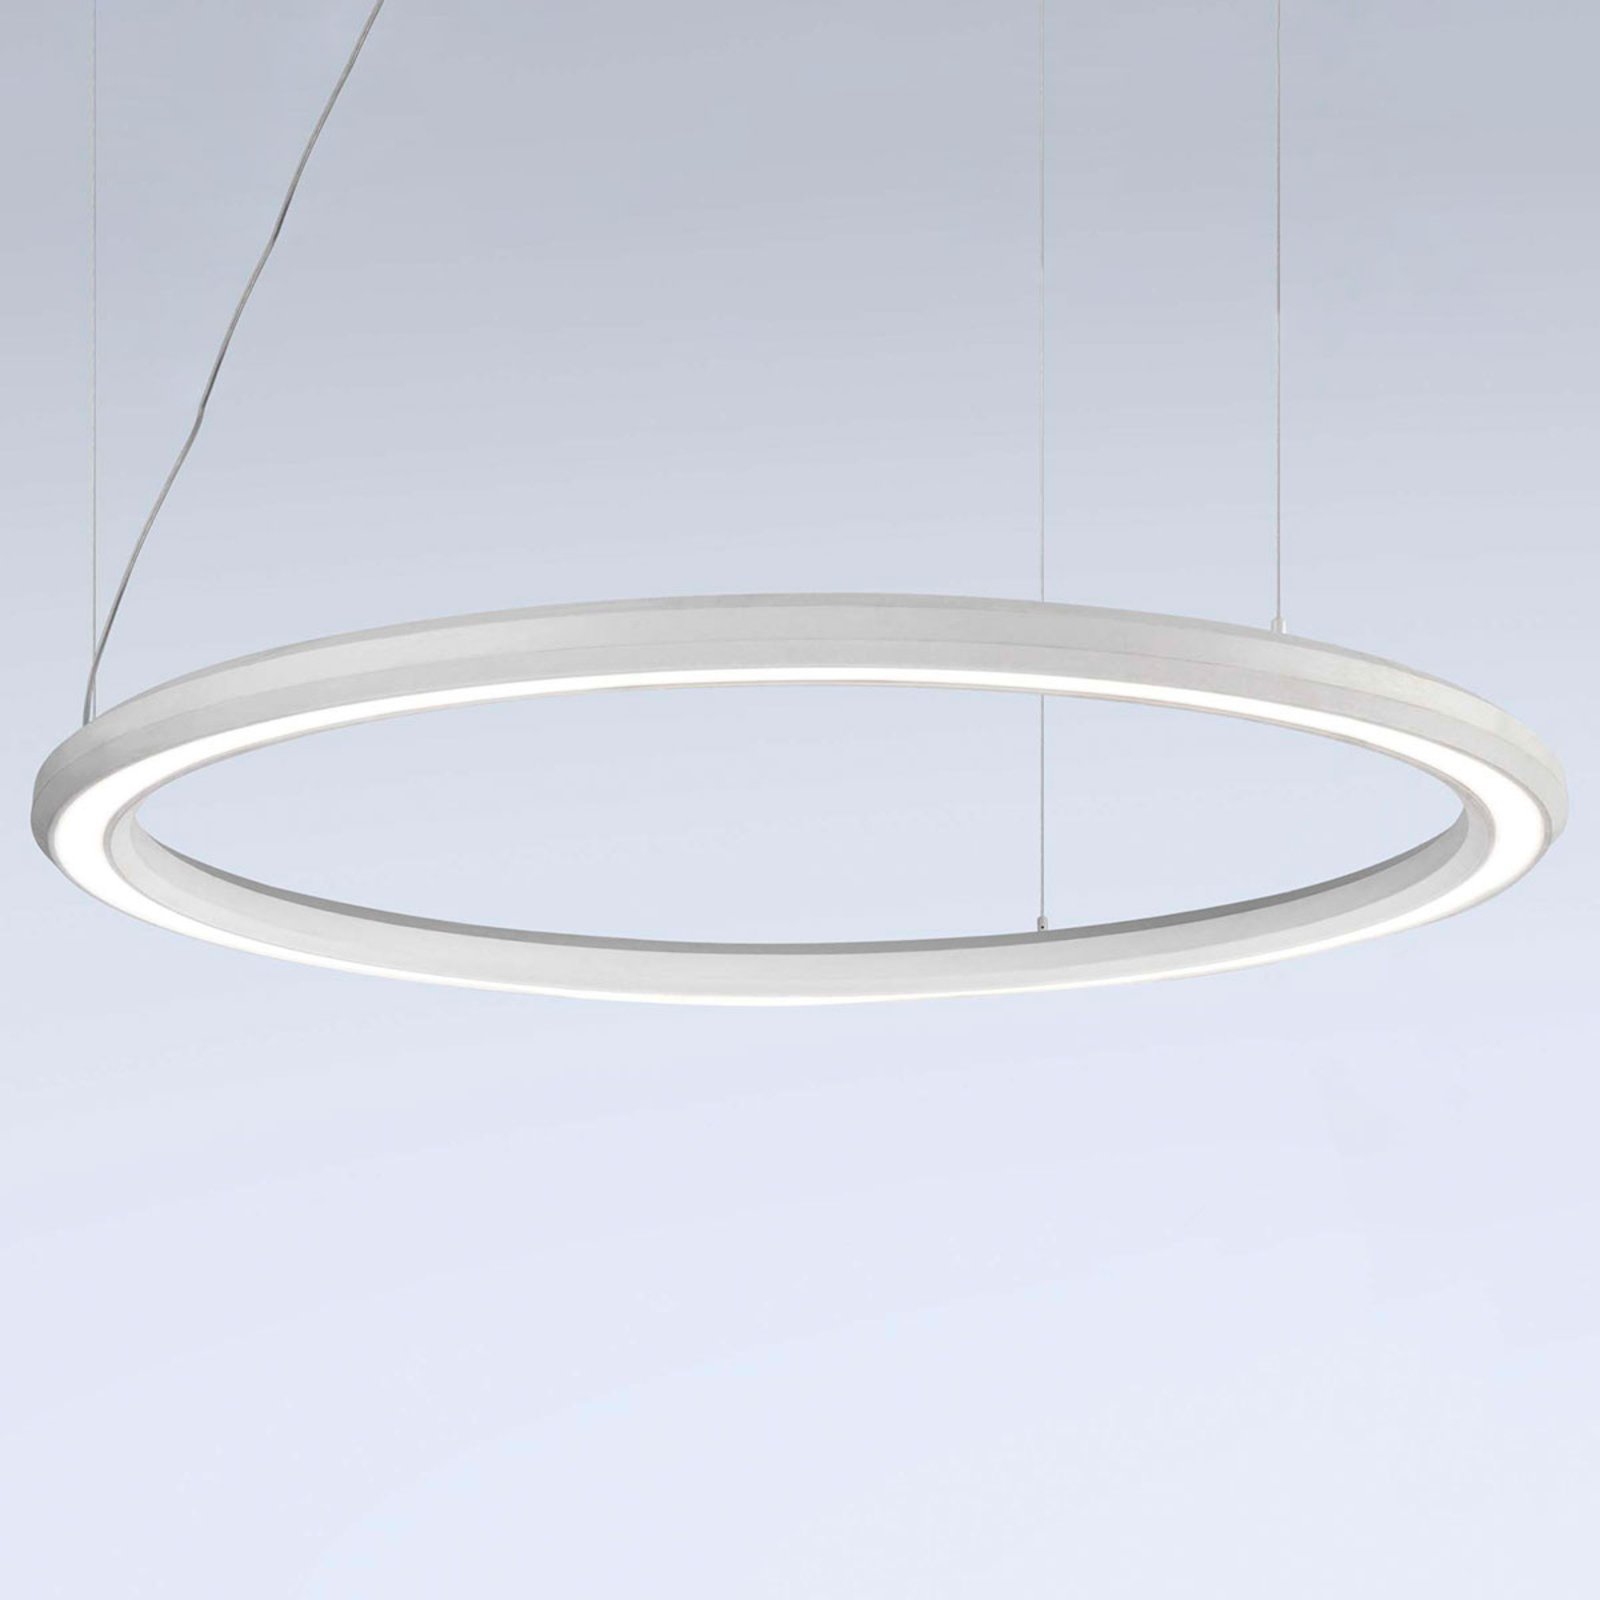 LED-riippuvalaisin Materica pohja Ø 120 cm valkoinen